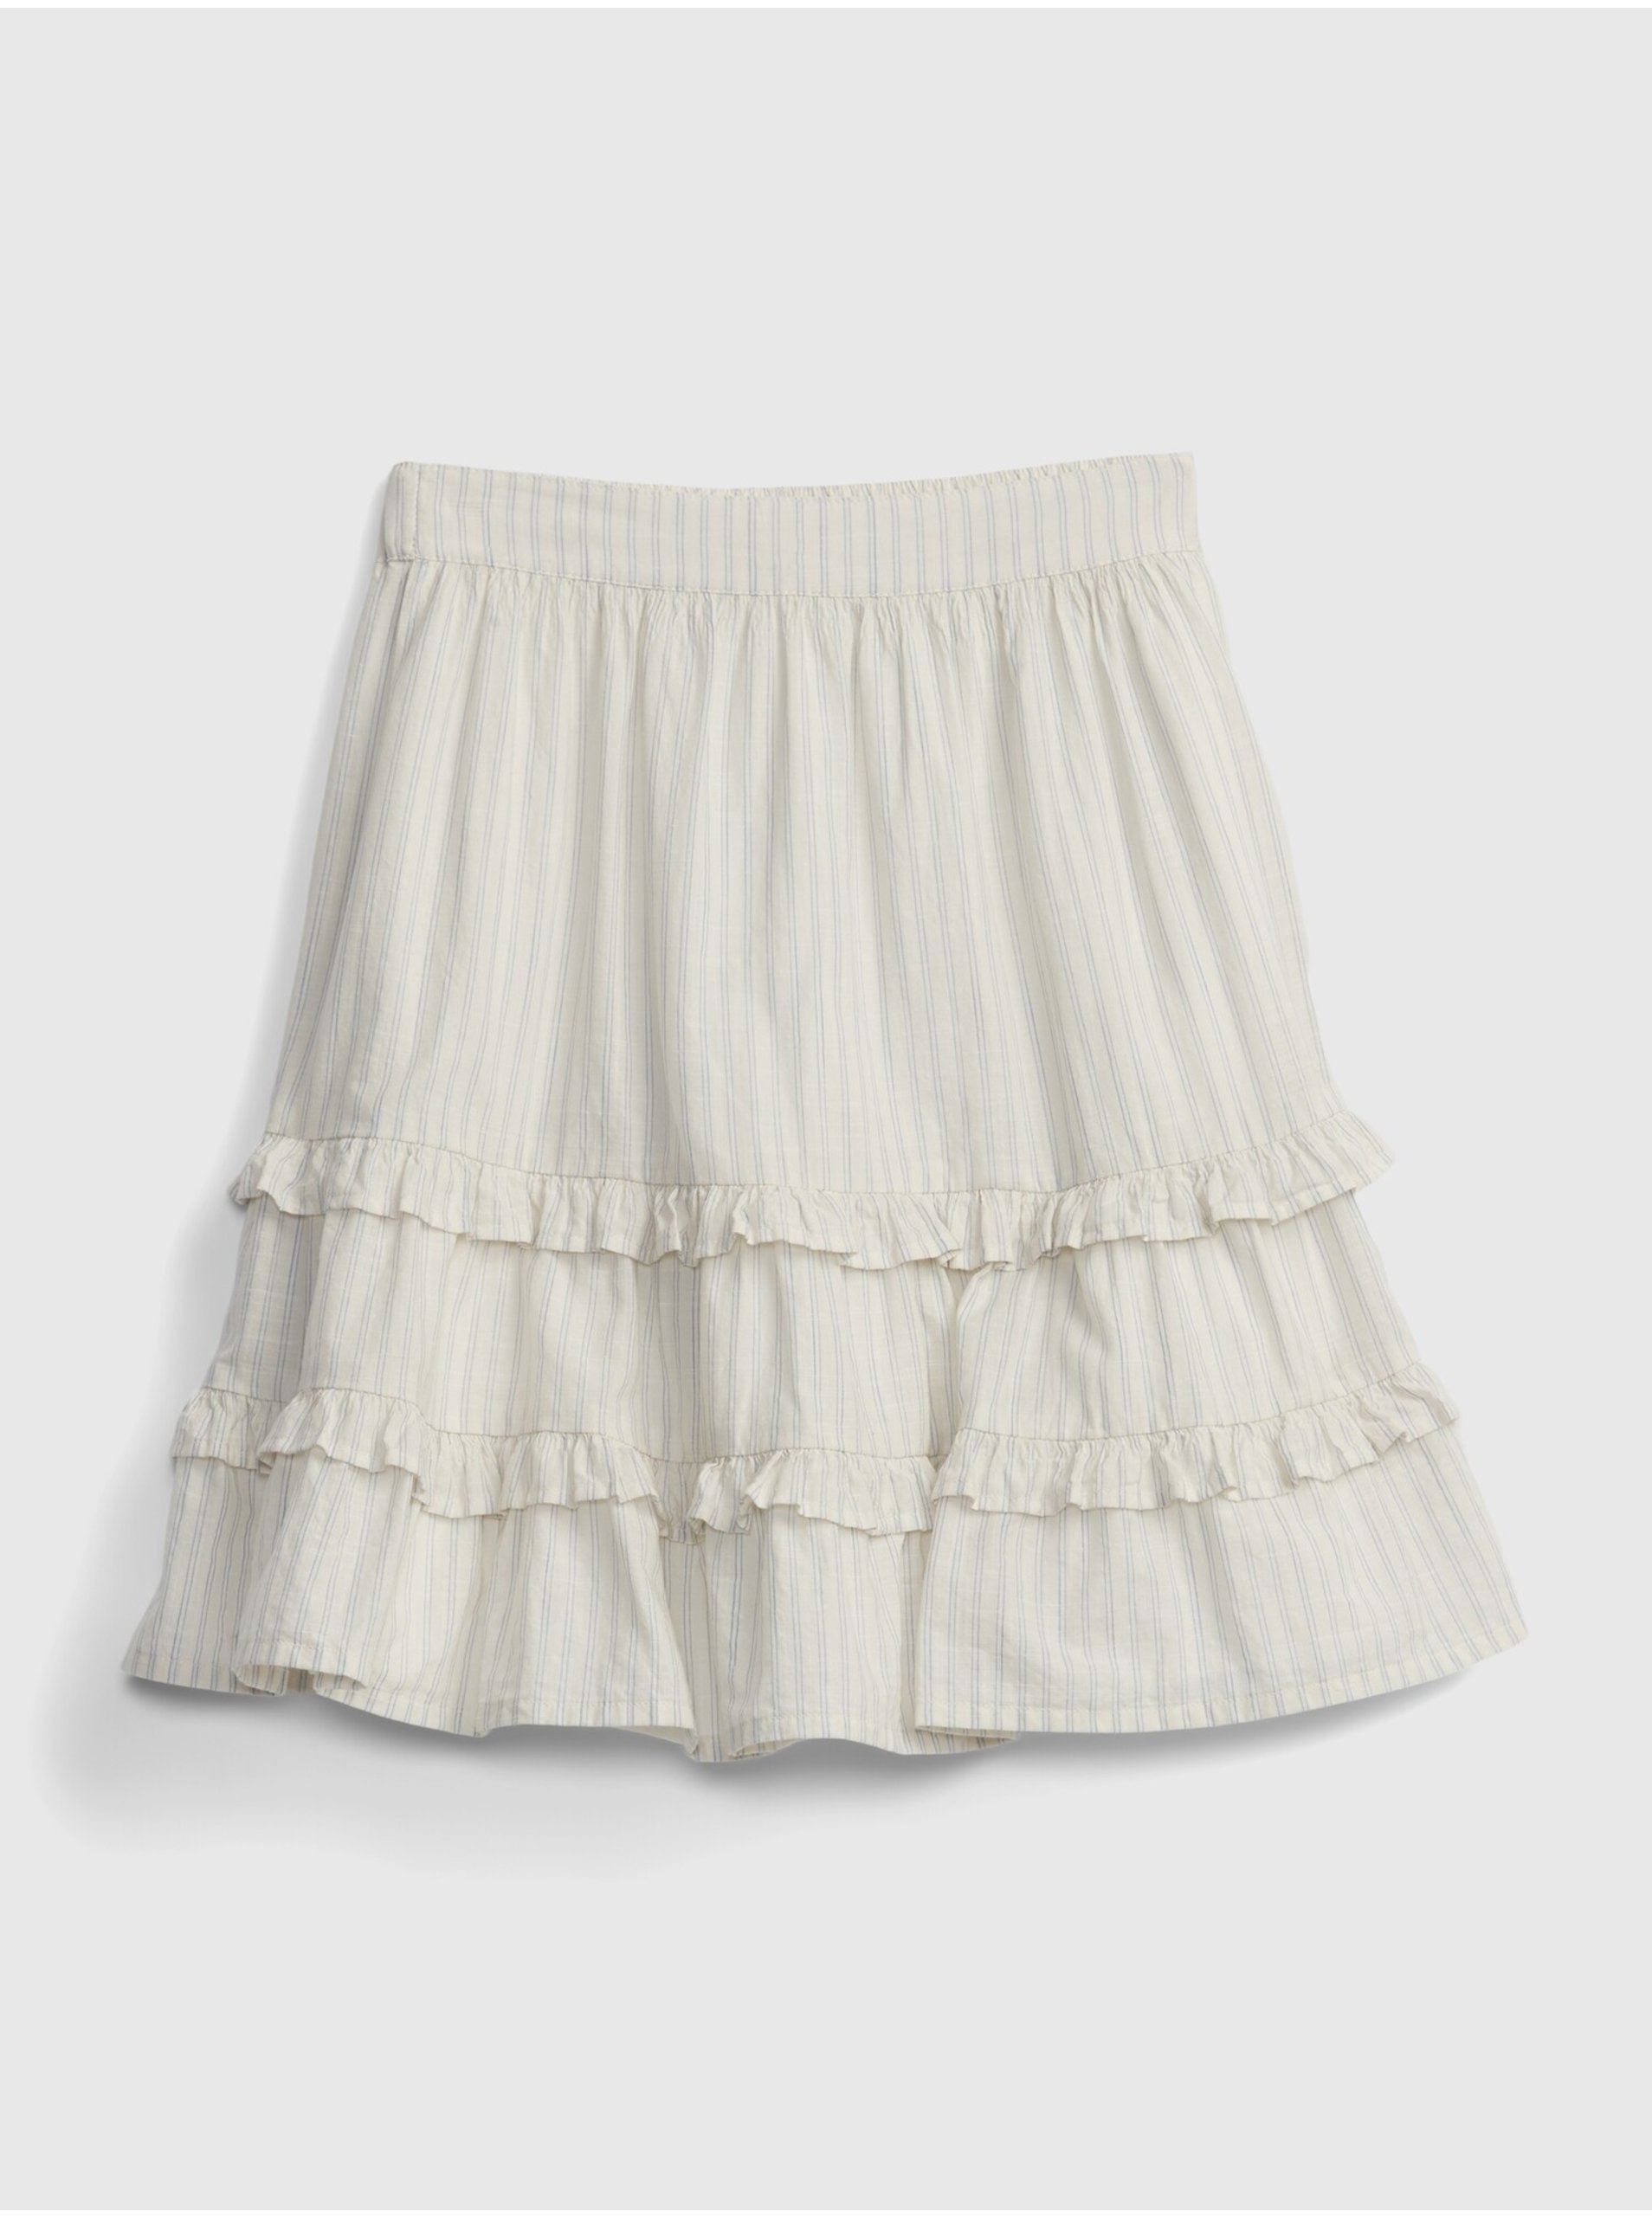 E-shop Bílá holčičí dětská sukně stripe skirt